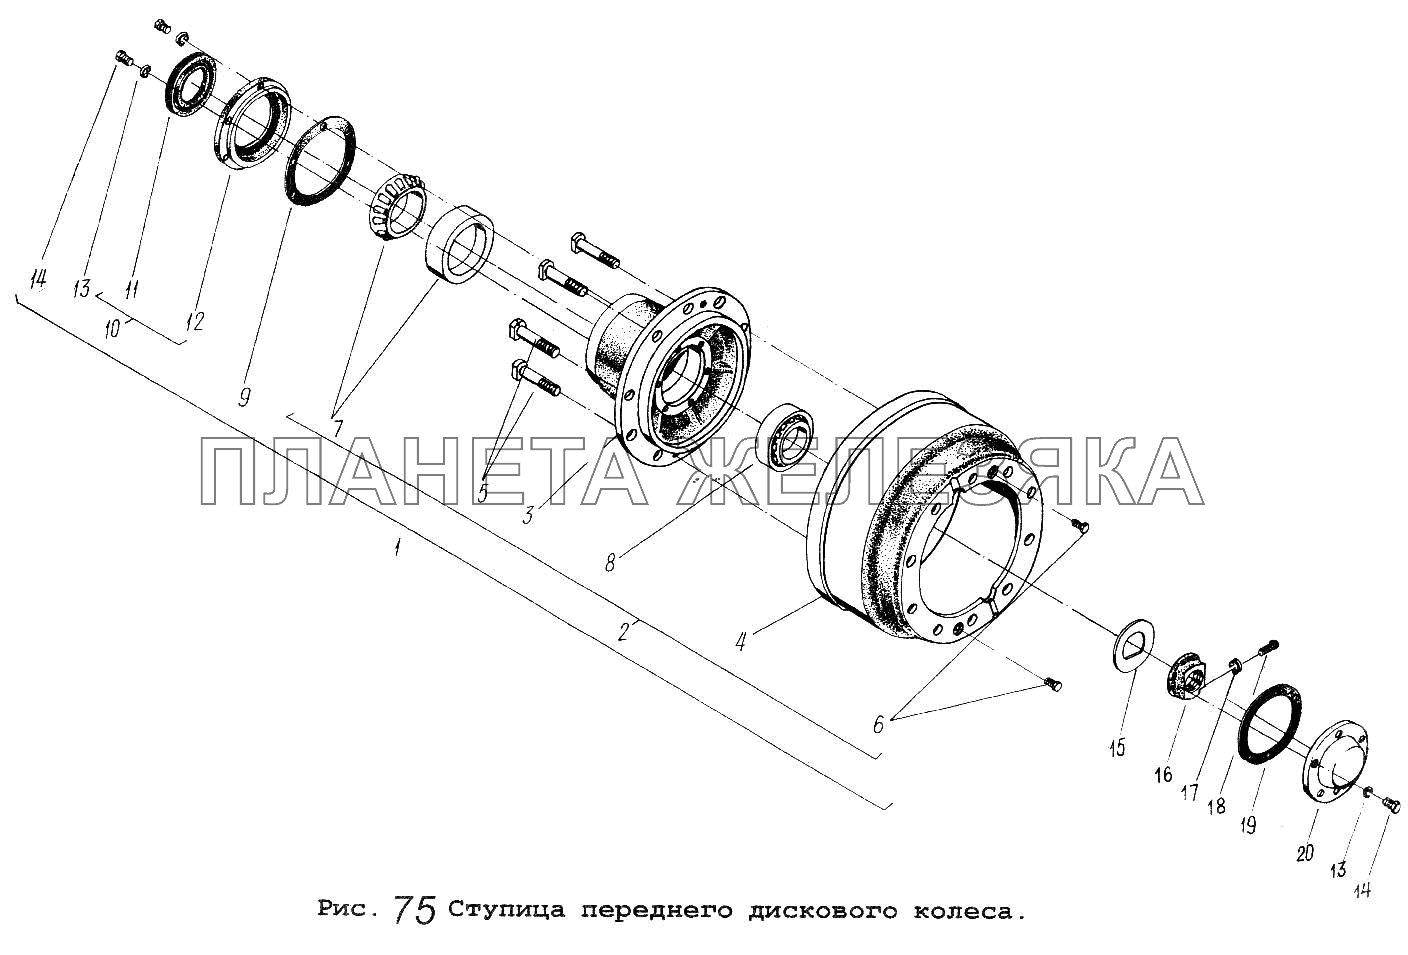 Ступица переднего дискового колеса МАЗ-5551